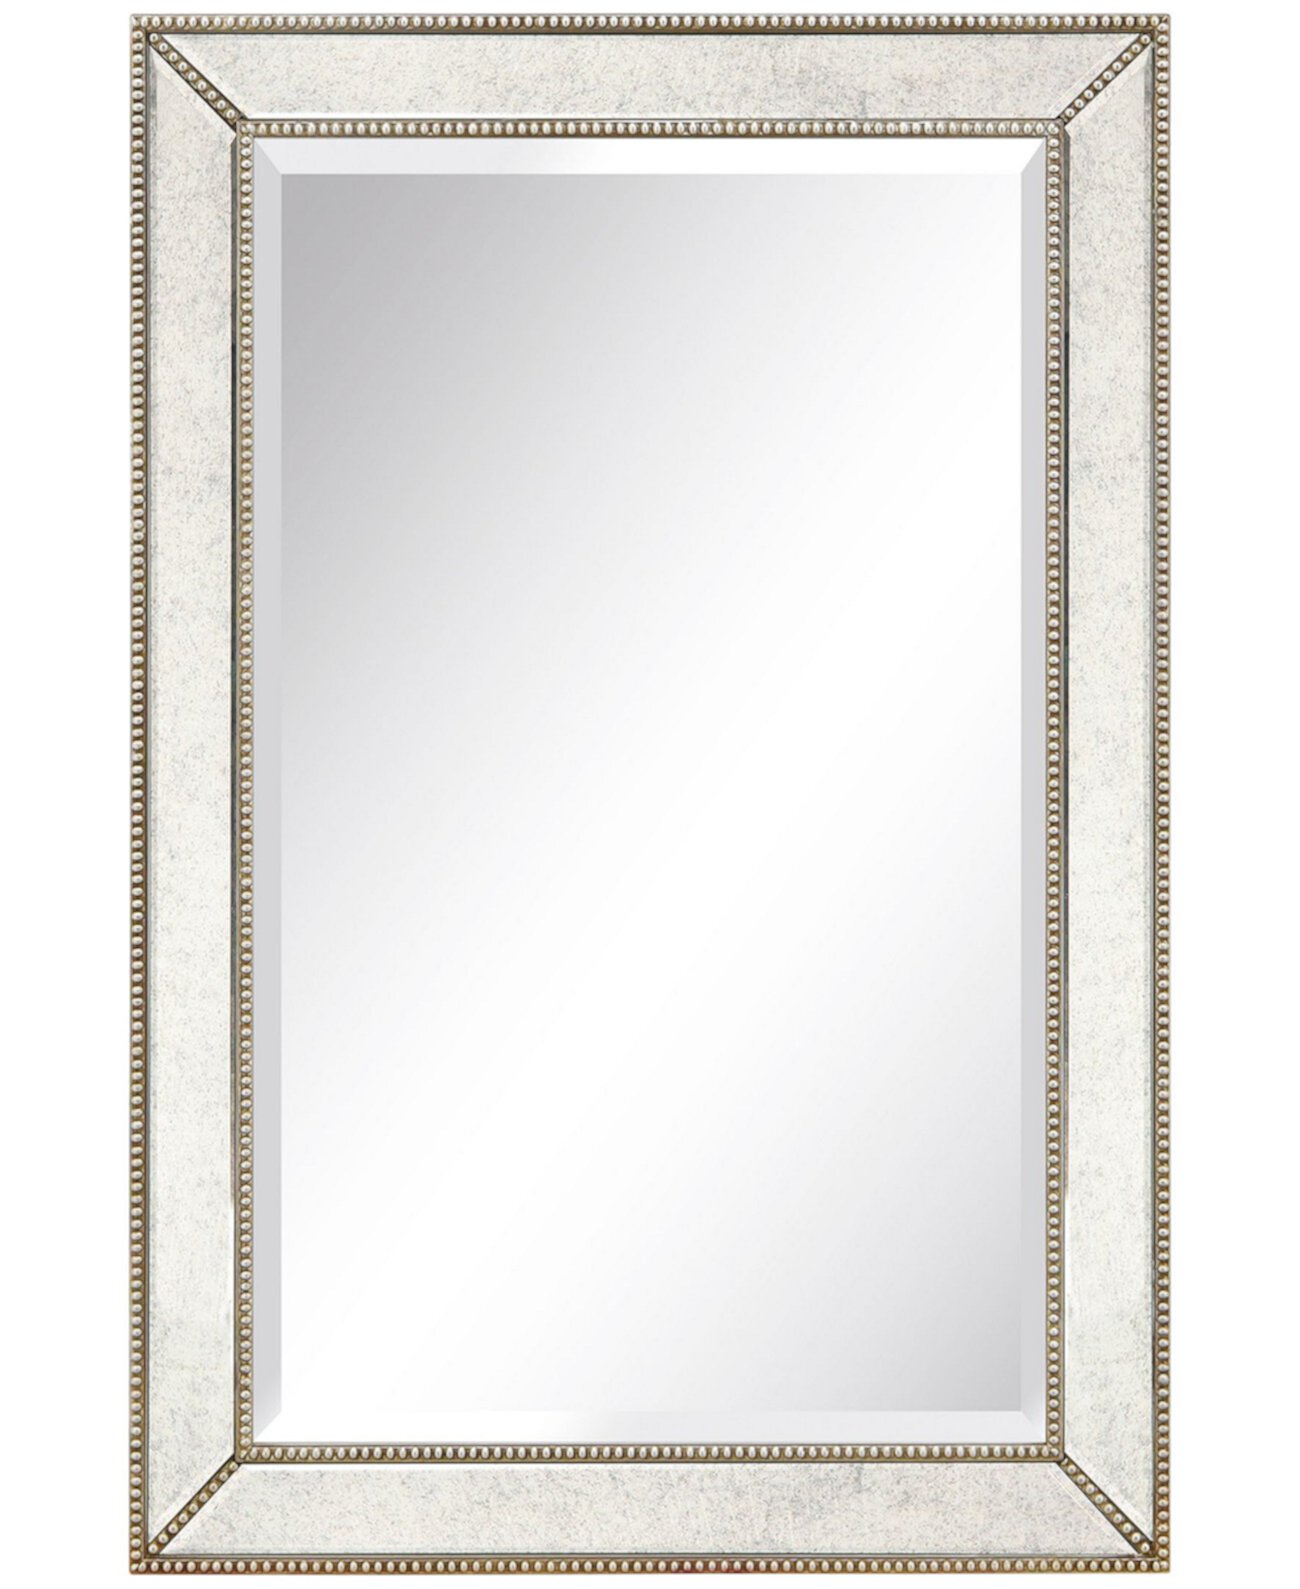 Каркас из массива дерева, покрытый антикварными зеркальными панелями со скошенной кромкой — 24 x 36 дюймов. Empire Art Direct